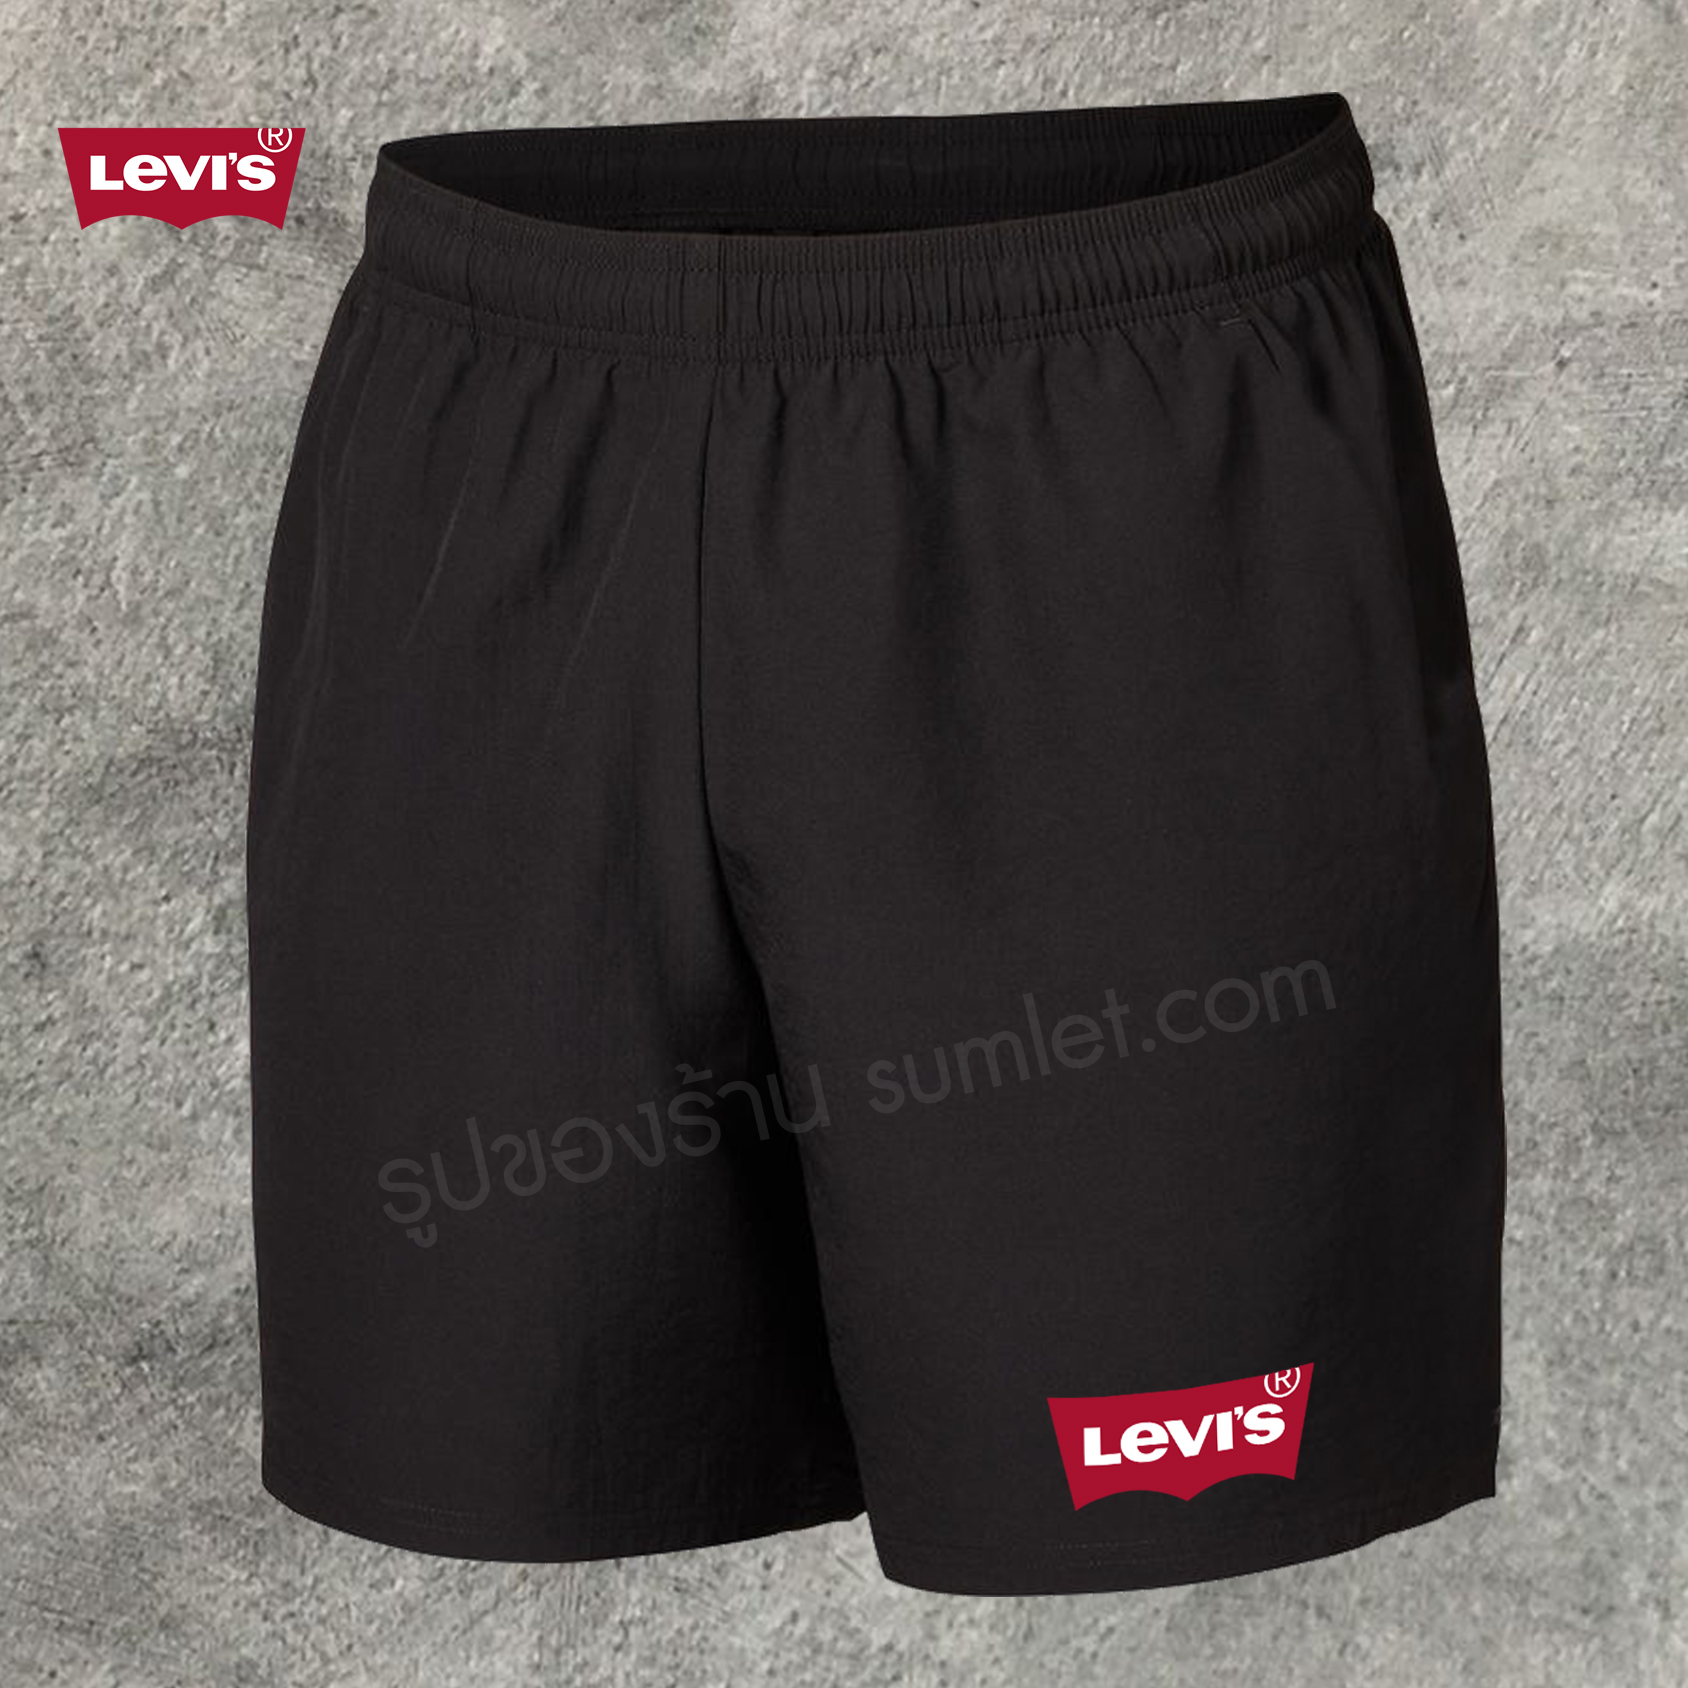 กางเกงกีฬาขาสั้นLevi'sกางเกงบอล กางเกงบอลครบไซส์ผ้าไมโครกีฬา หนาไม่ขาดง่าย